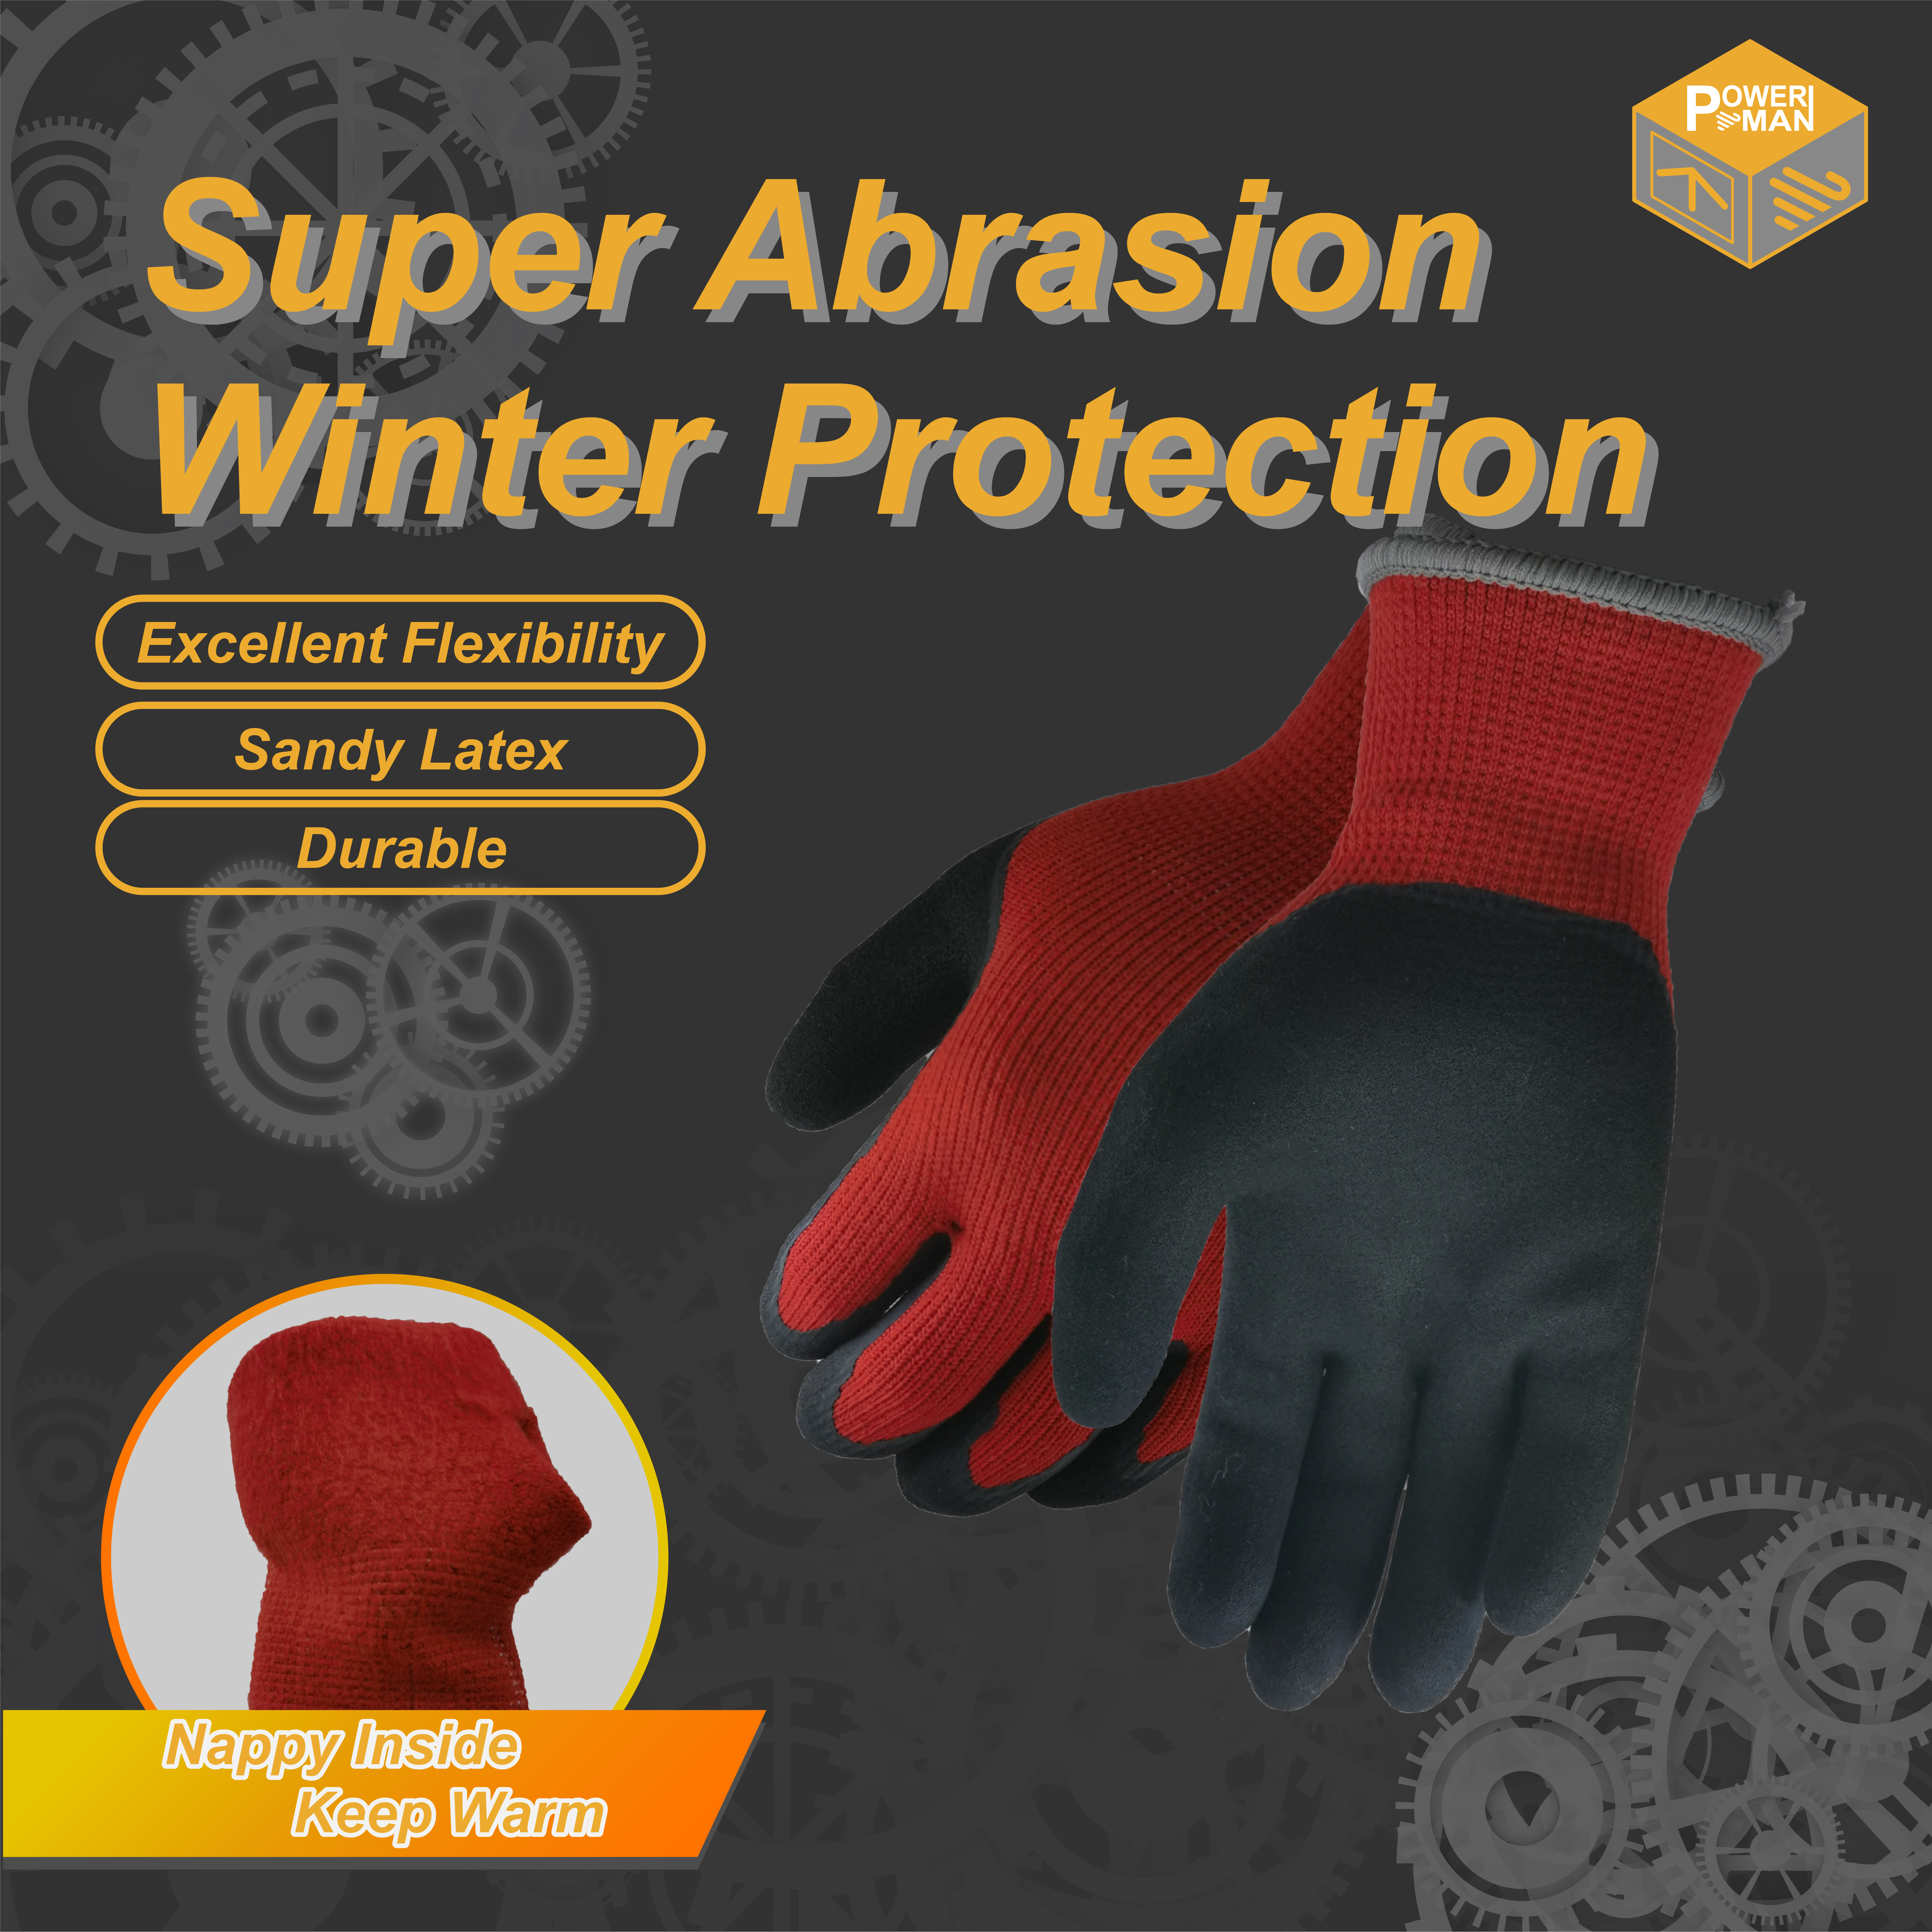 Powerman® Thermal Liner -käsineet suojaavat käsiä matalan lämpötilan vaikutukselta